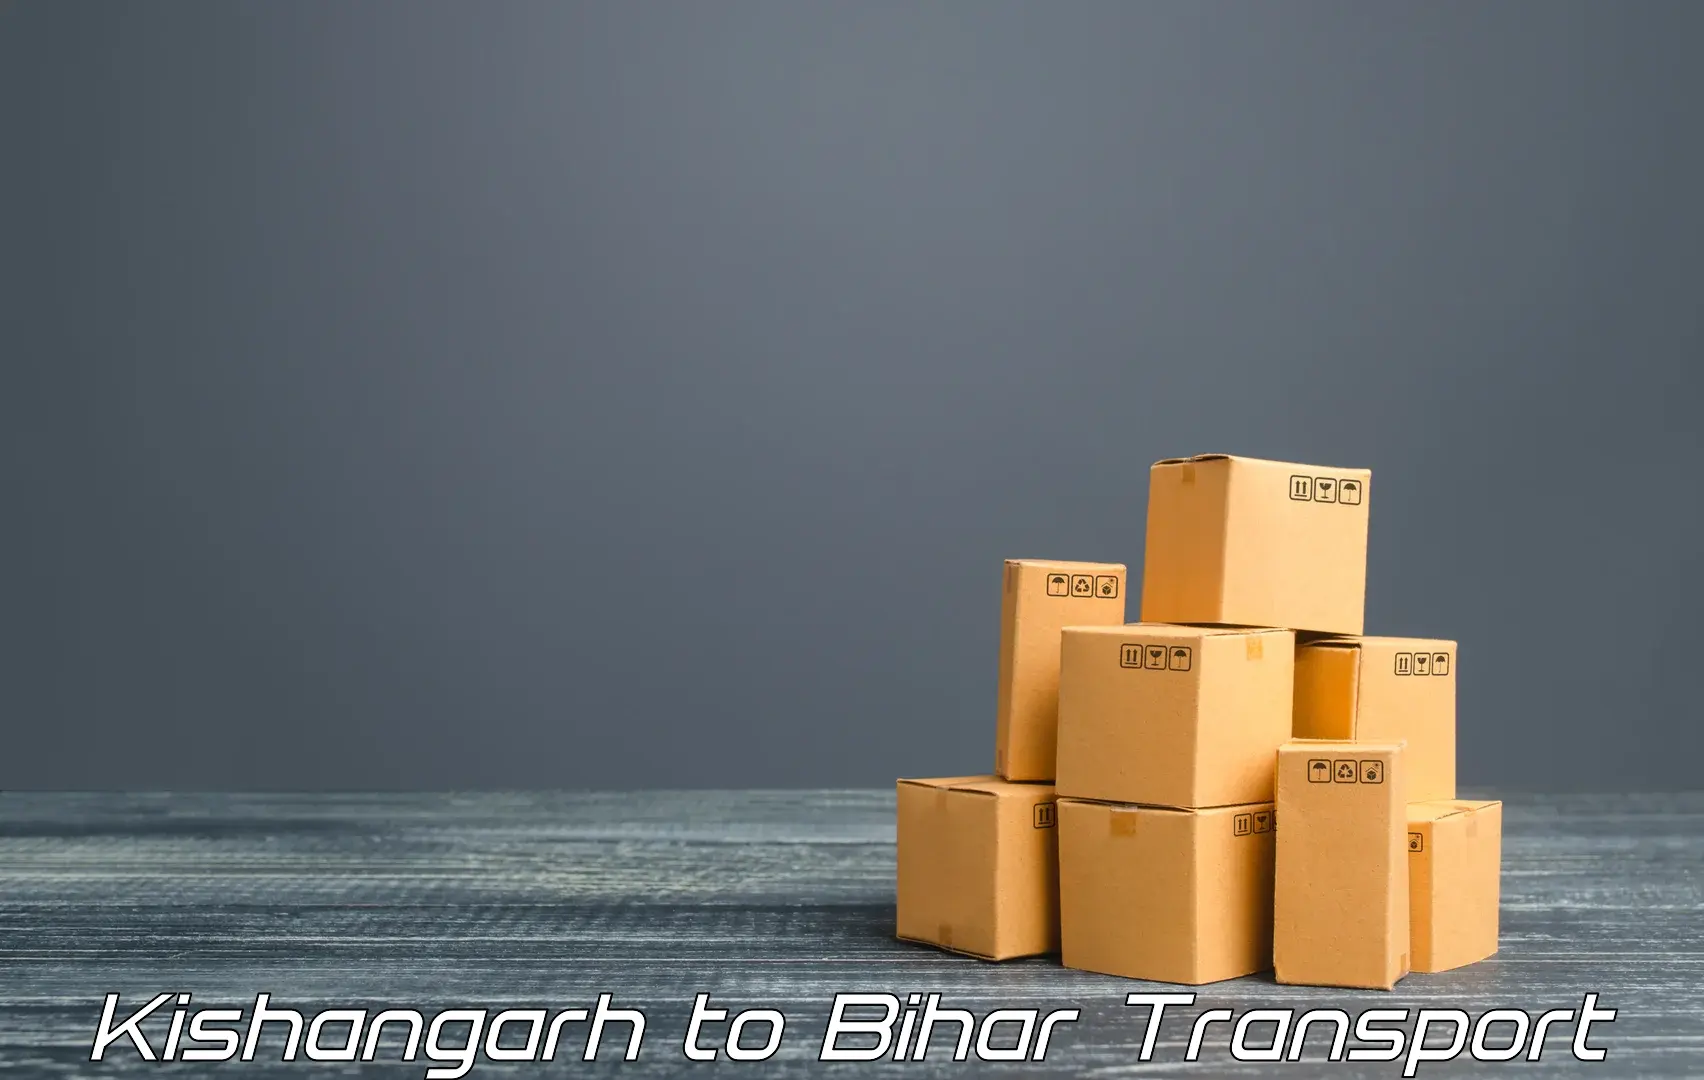 Container transport service Kishangarh to Piro